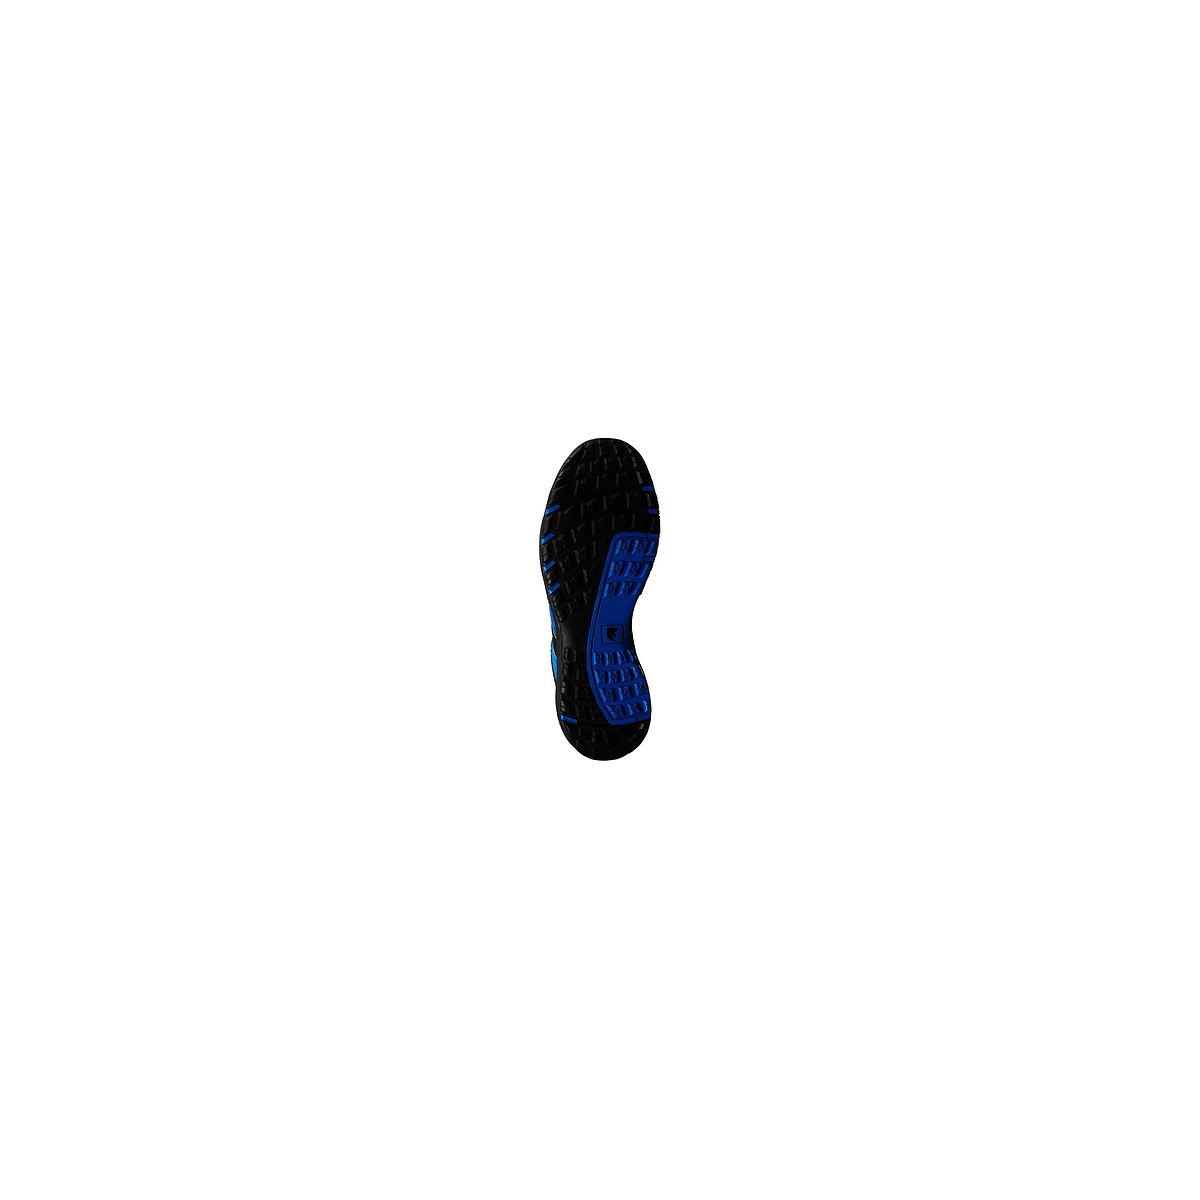 Chaussures de sécurité GYPSE S1P Basse Bleu/Noir - Coverguard - Taille 46 1